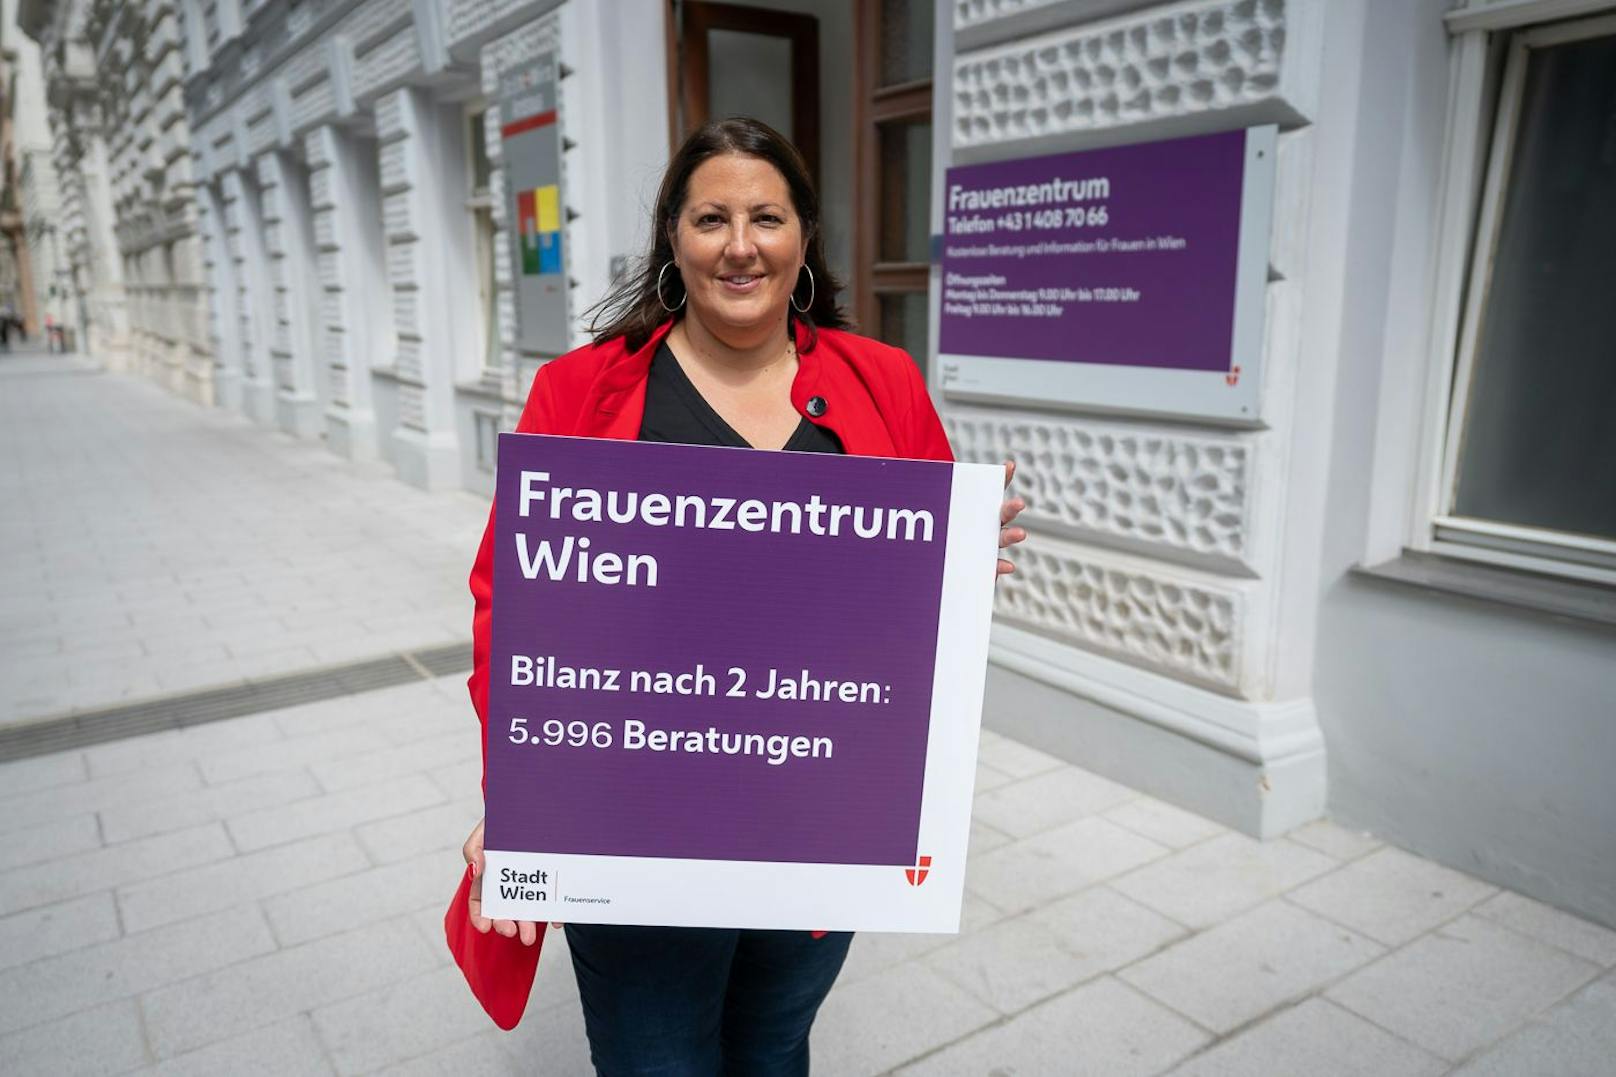 Seit der Gründung des Frauenzentrum Wien im August 2019 wurden fast 6.000 Wiener beraten, erklärt Vizebürgermeisterin und Frauenstadträtin Kathrin Gaal (SPÖ). Am Mittwoch bieten die Expertinnen einen Thementag zum Wohnen in Wien an.